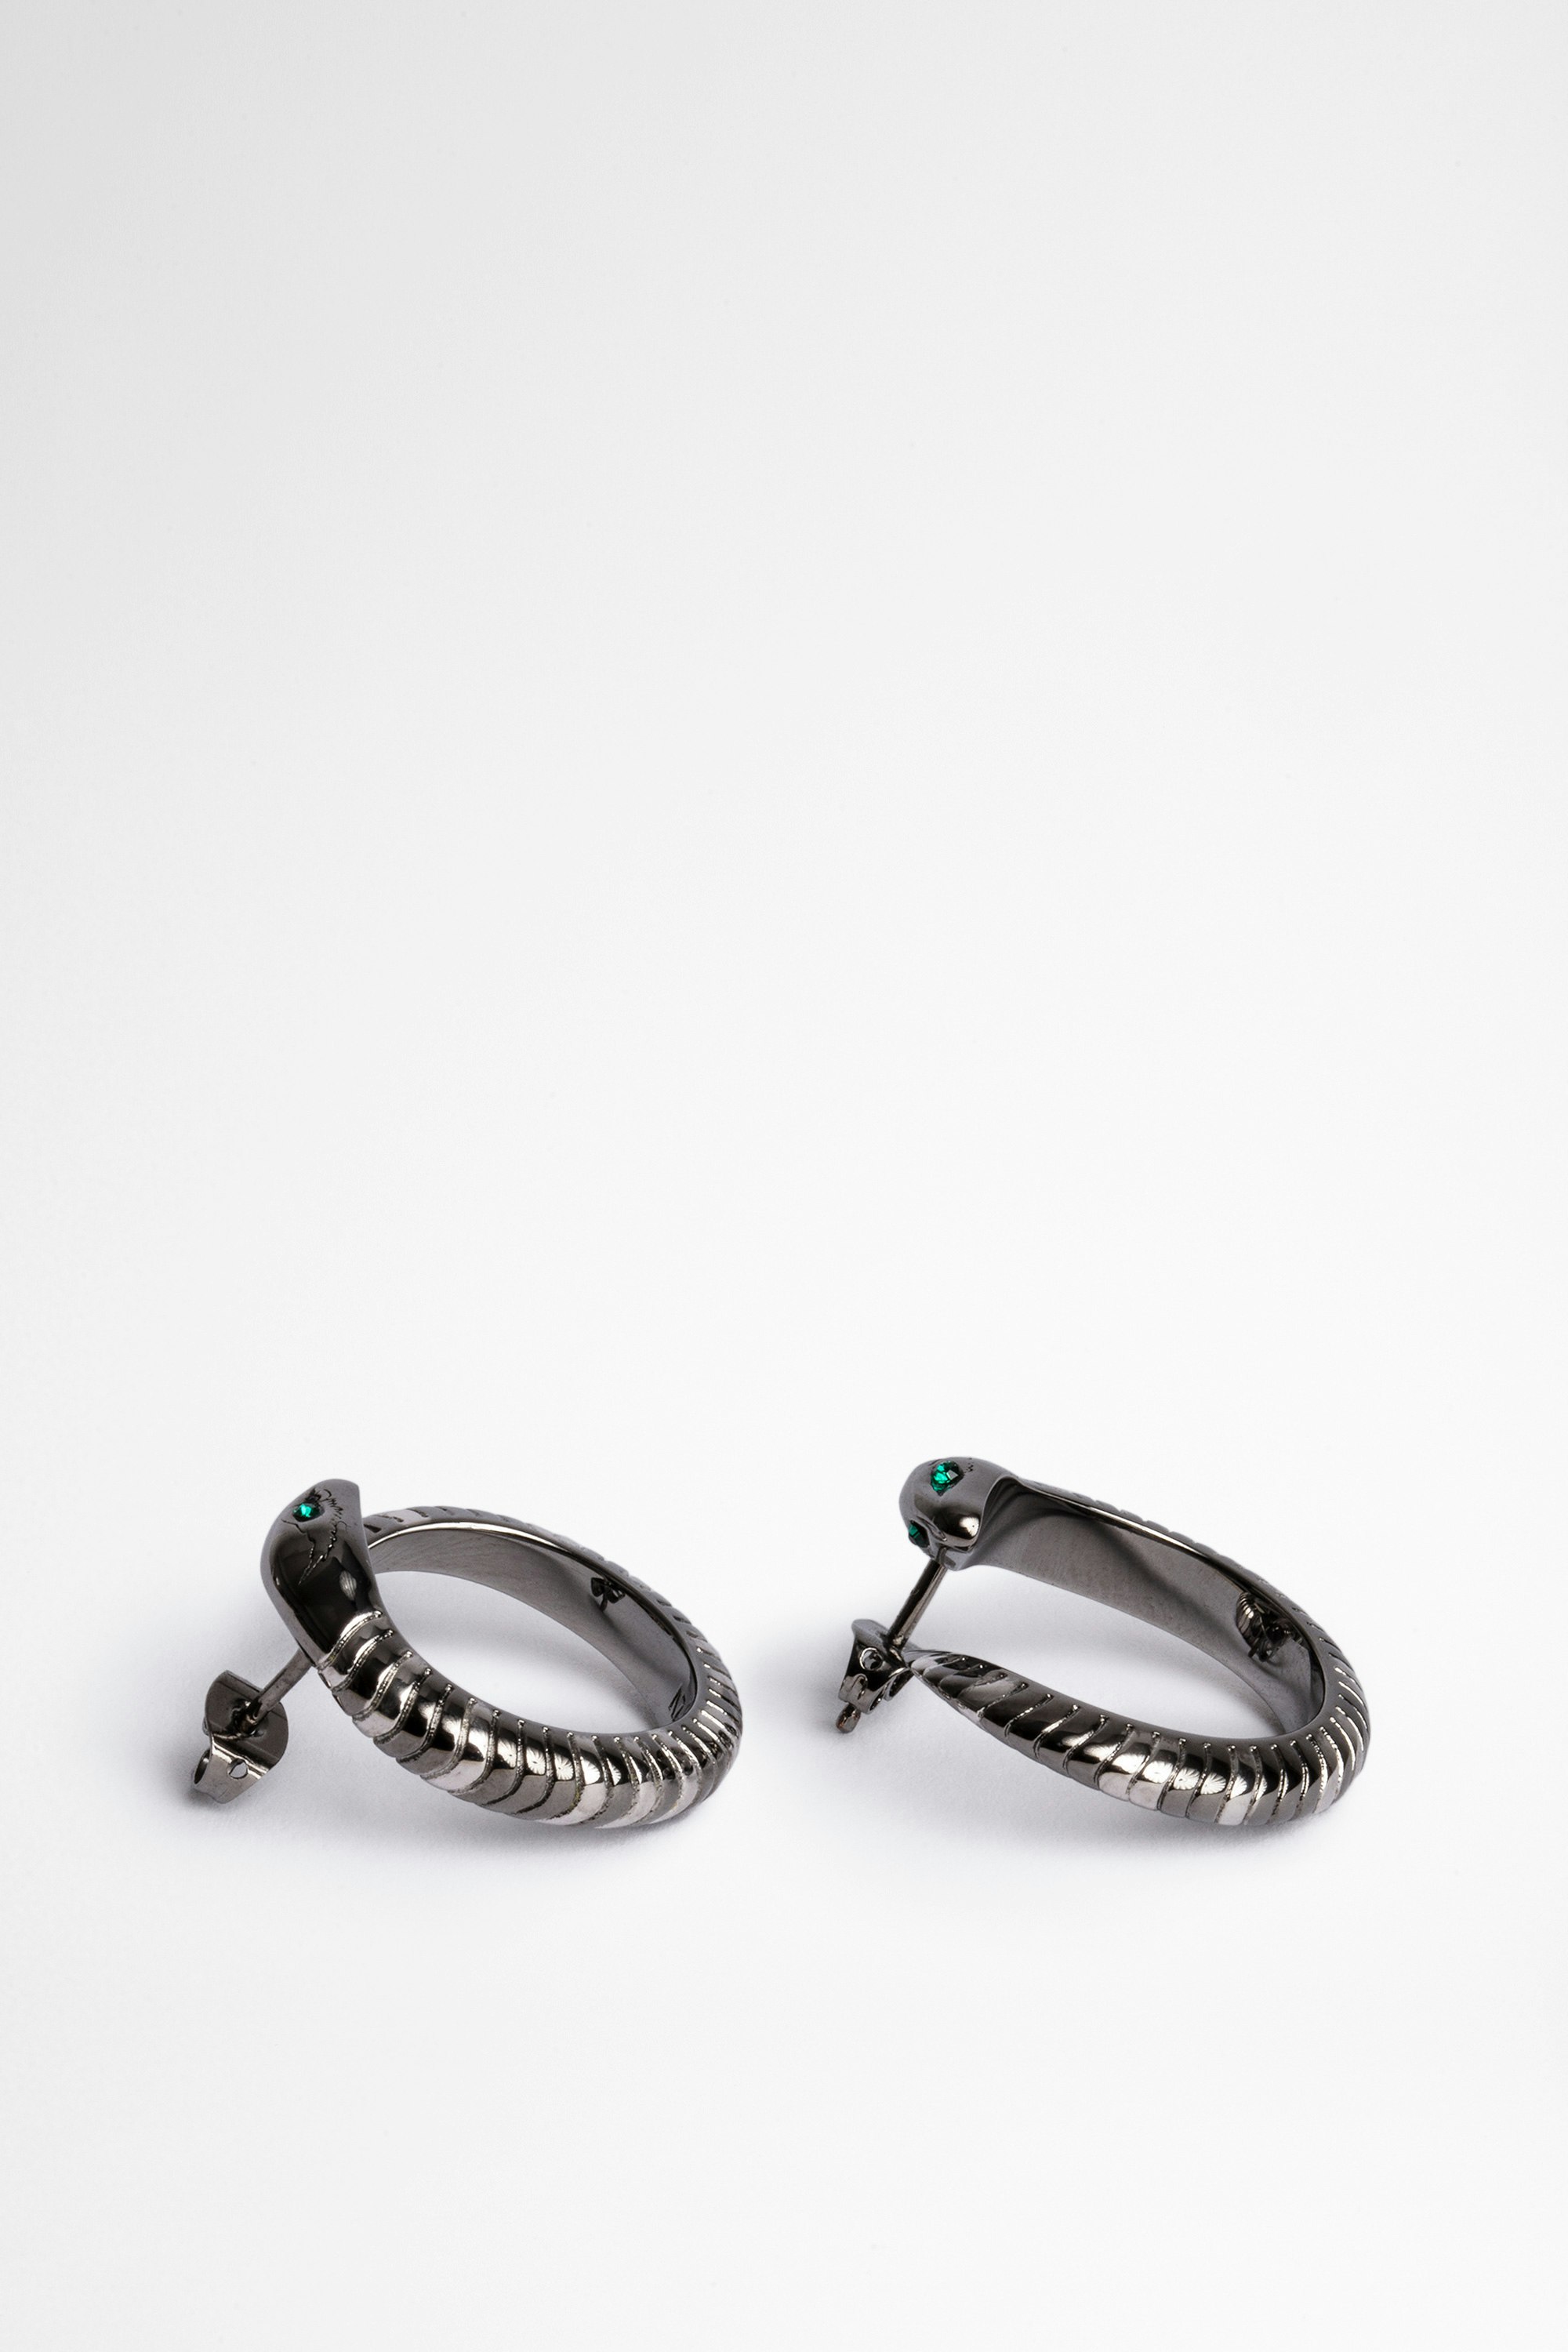 Snake Hoop エアーリング Women's silver-tone brass snake earrings